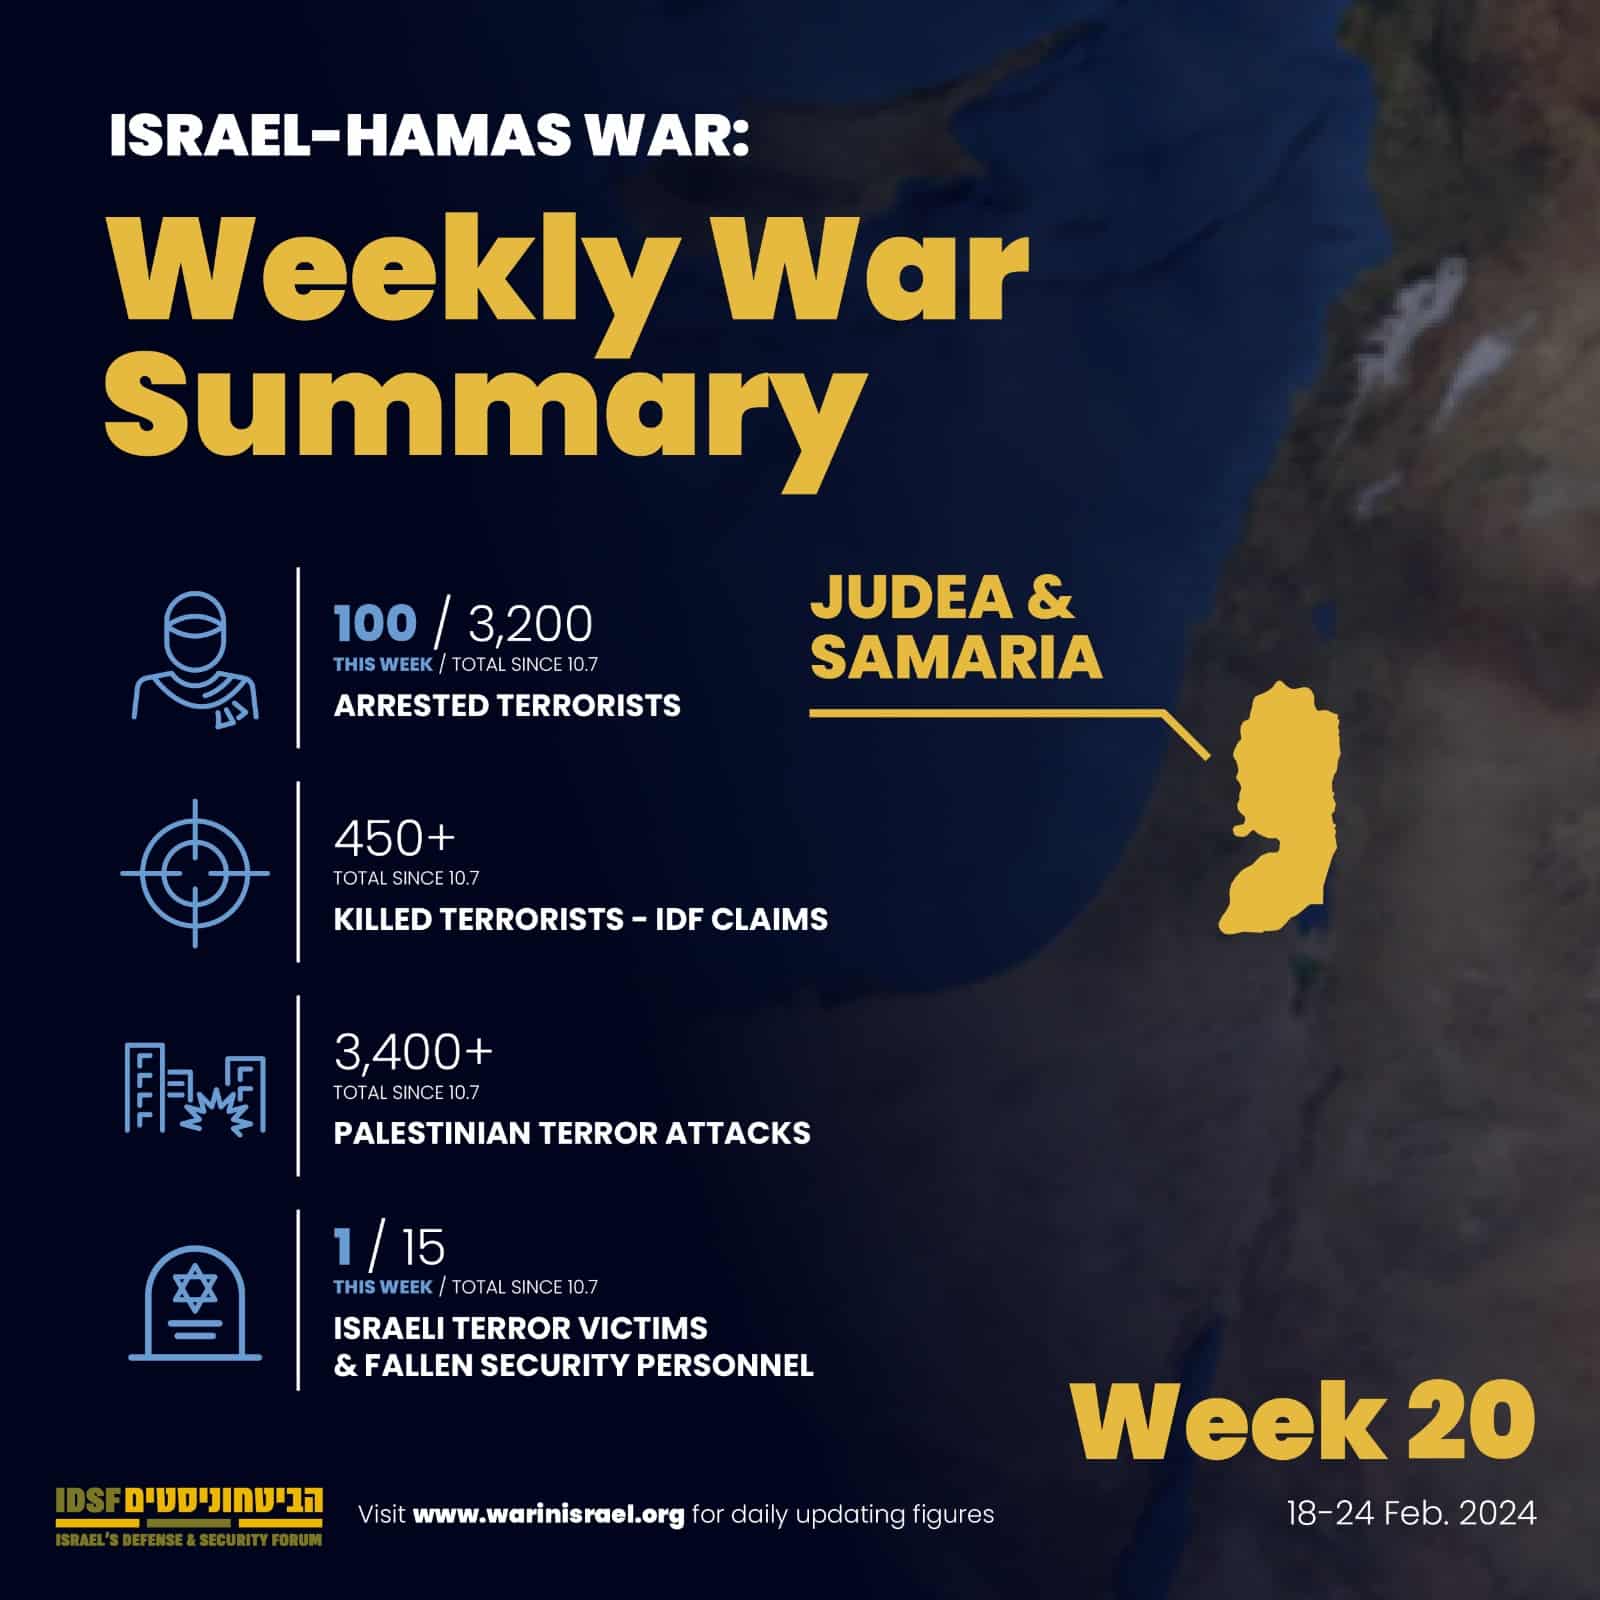 Judea and Samaria Weekly War Summary data